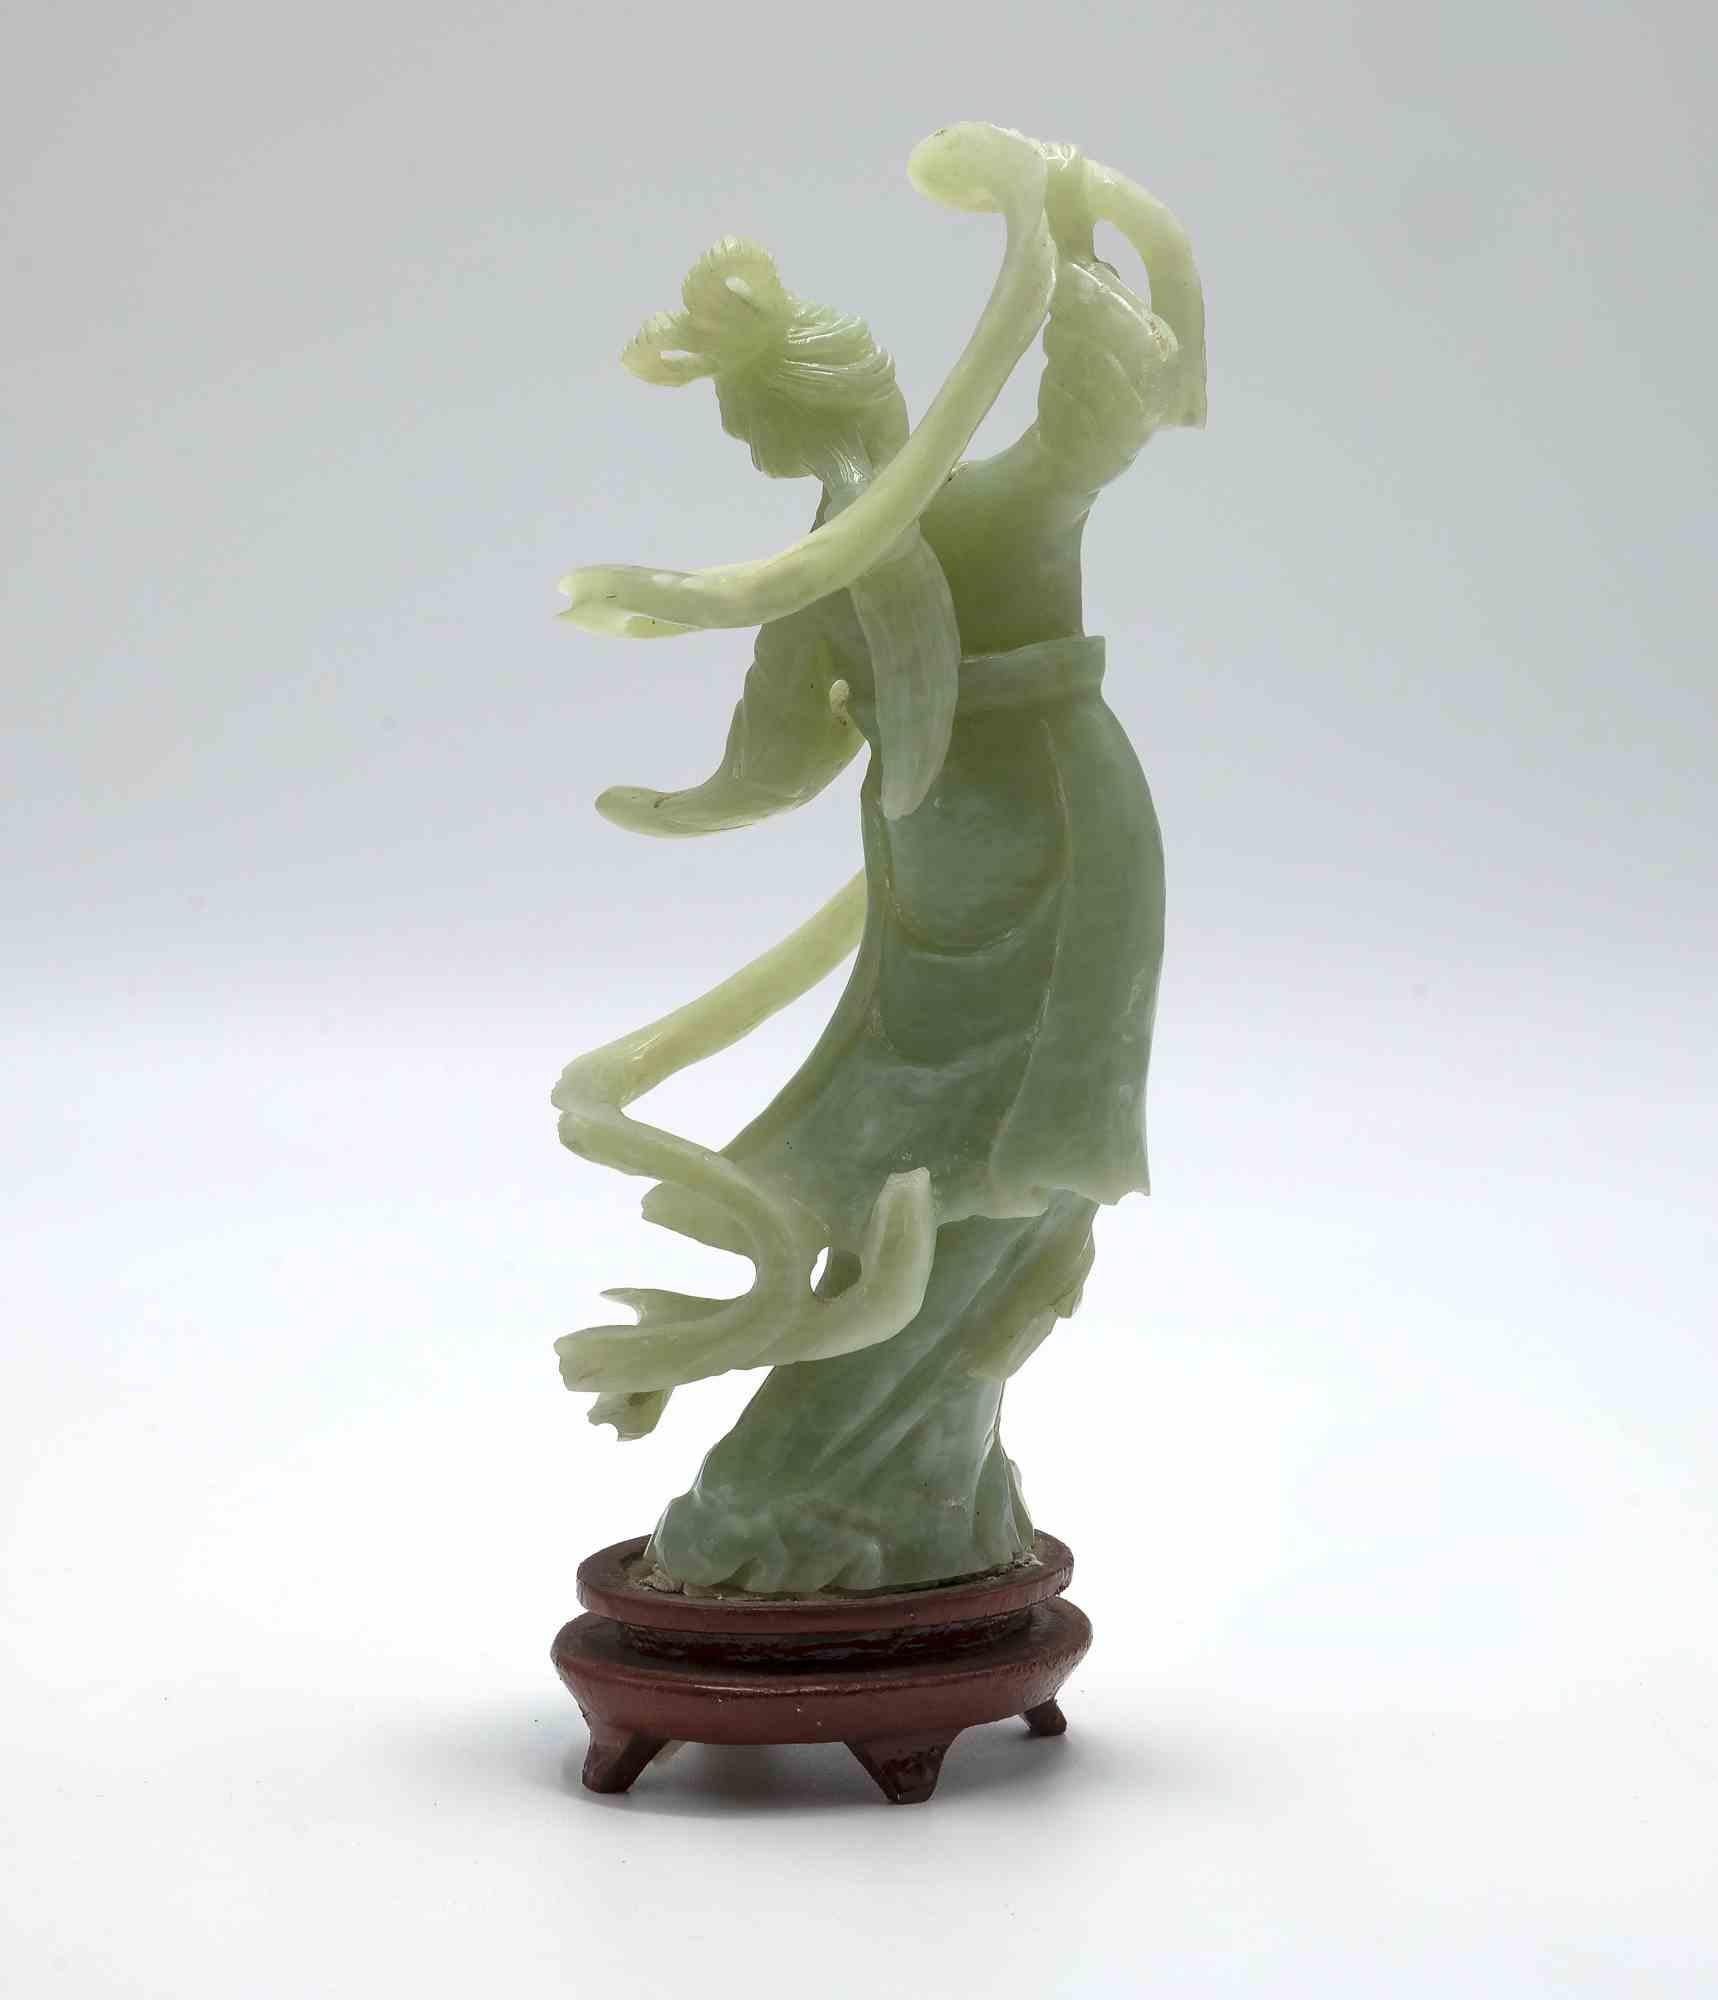 La sculpture serpentine chinoise vintage est un objet décoratif traditionnel réalisé en Chine au début du 20e siècle.

Marbre serpentin. 

Fabriqué en Chine. 

Bonnes conditions. 

Petite sculpture chinoise en serpentine représentant He Xiangu